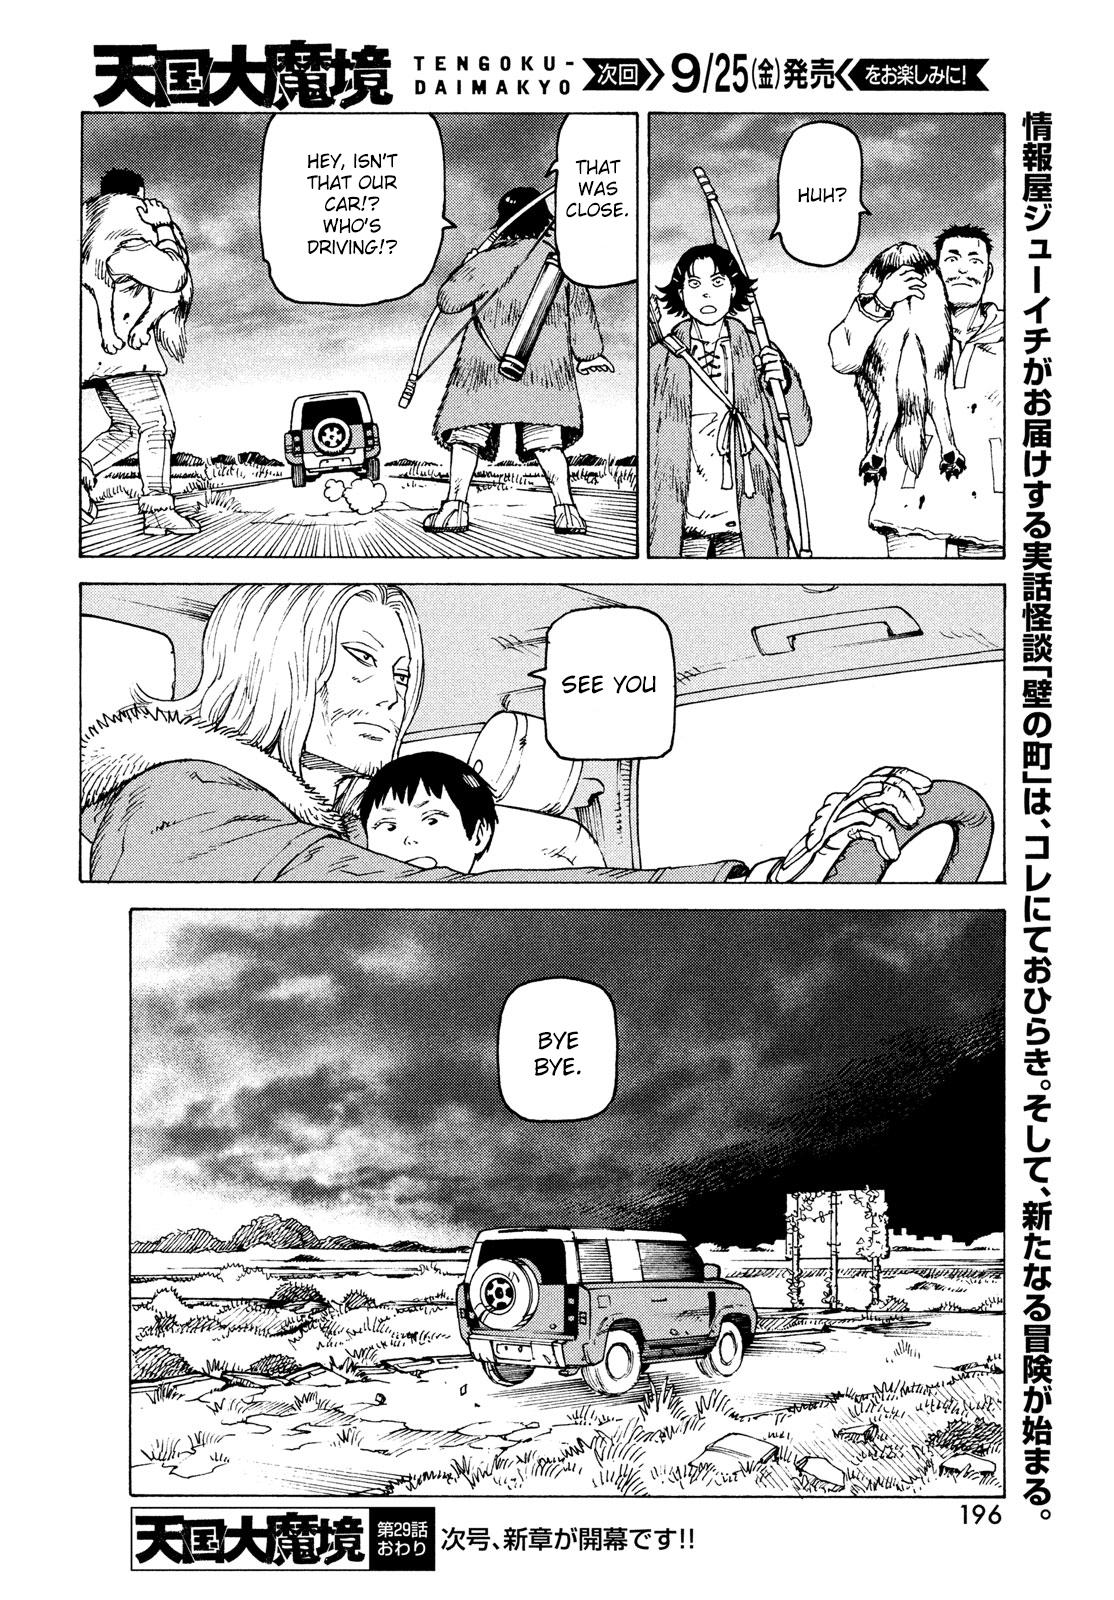 Tengoku Daimakyou Chapter 29: Walled City ➄ page 30 - Mangakakalot